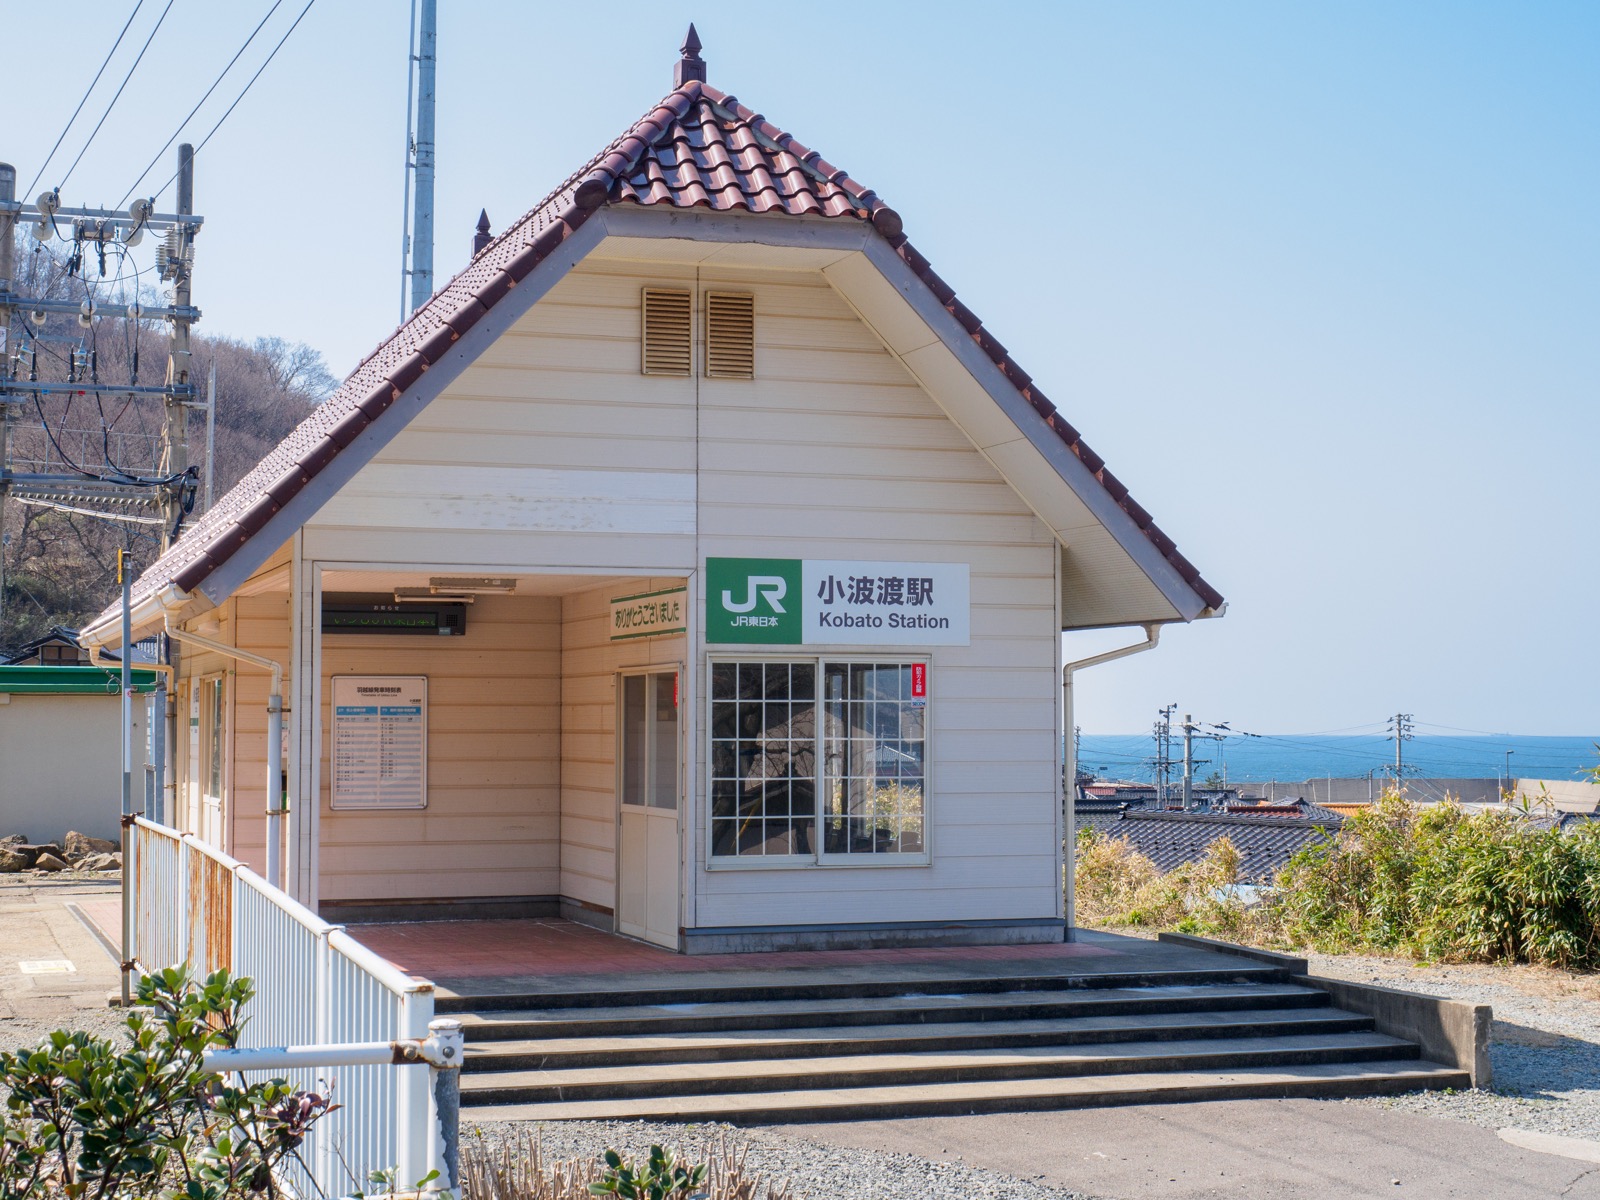 小波渡駅の駅舎と日本海